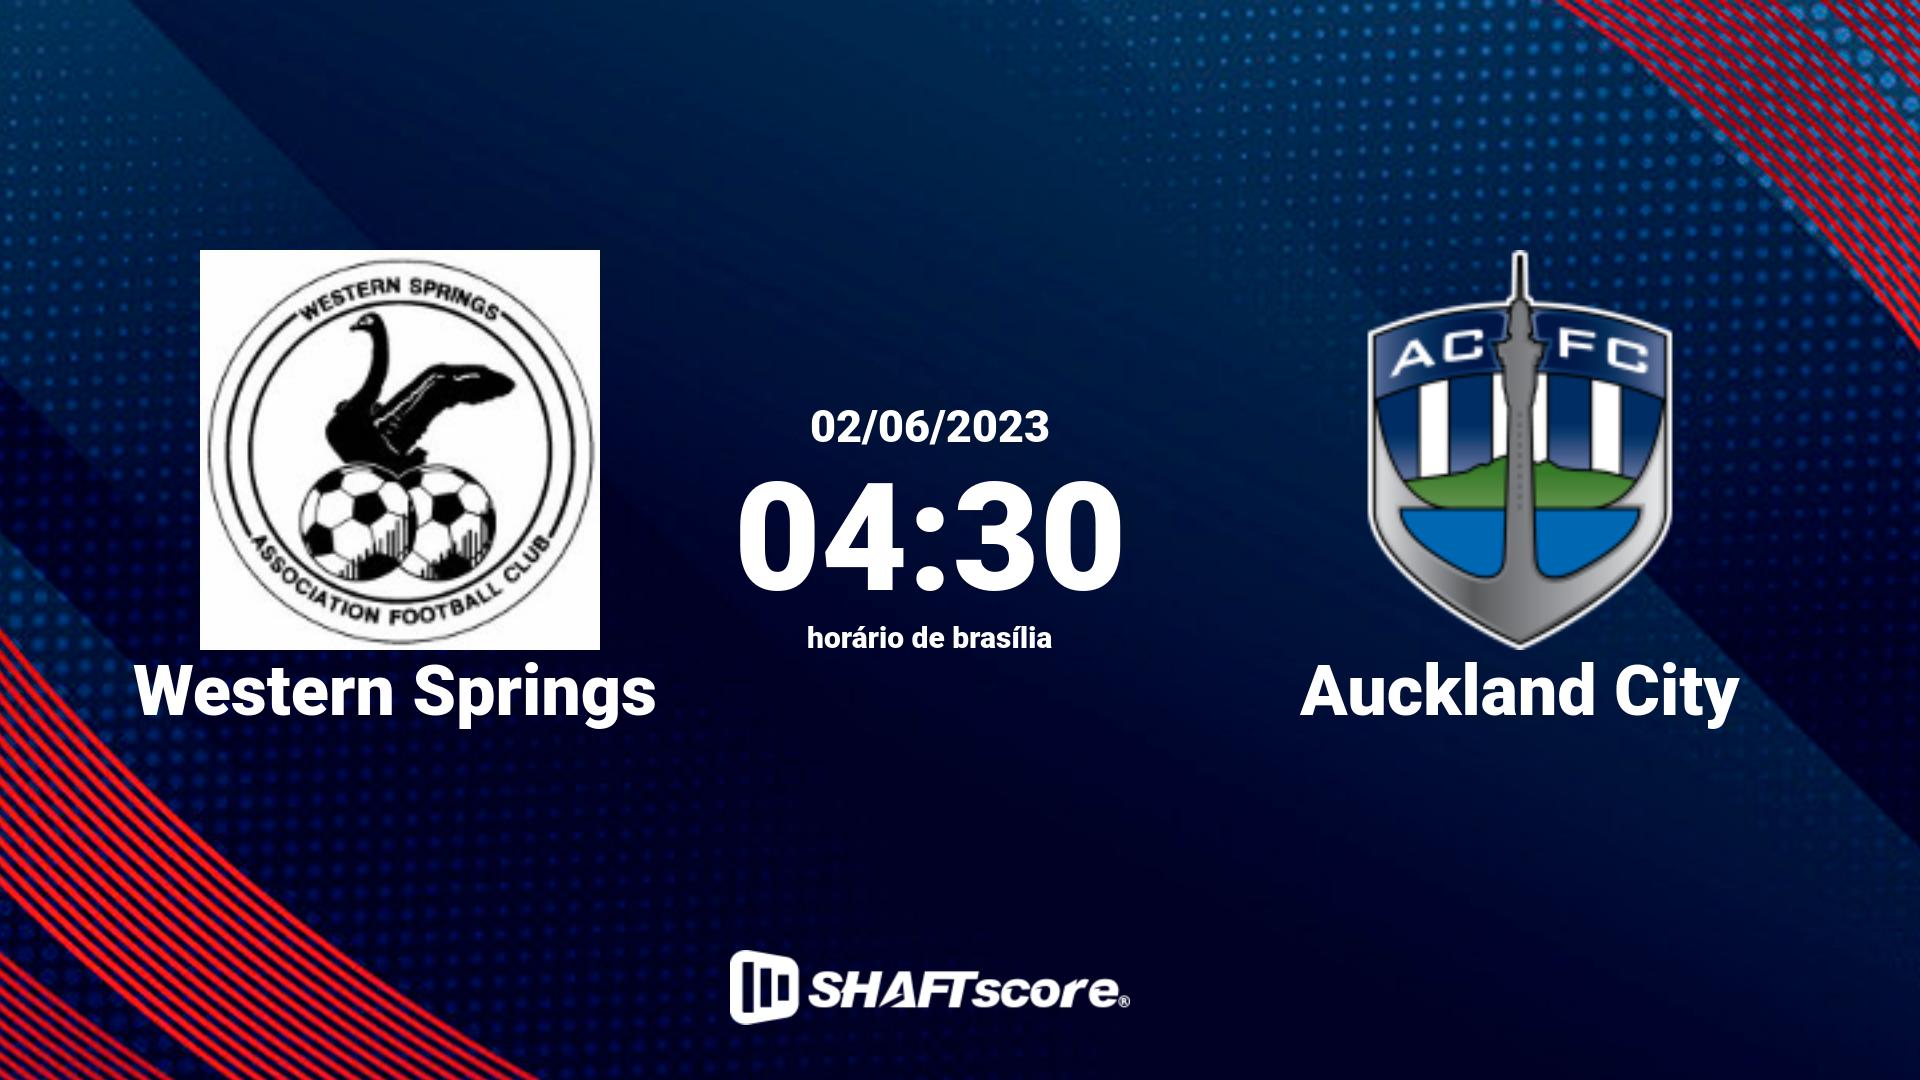 Estatísticas do jogo Western Springs vs Auckland City 02.06 04:30